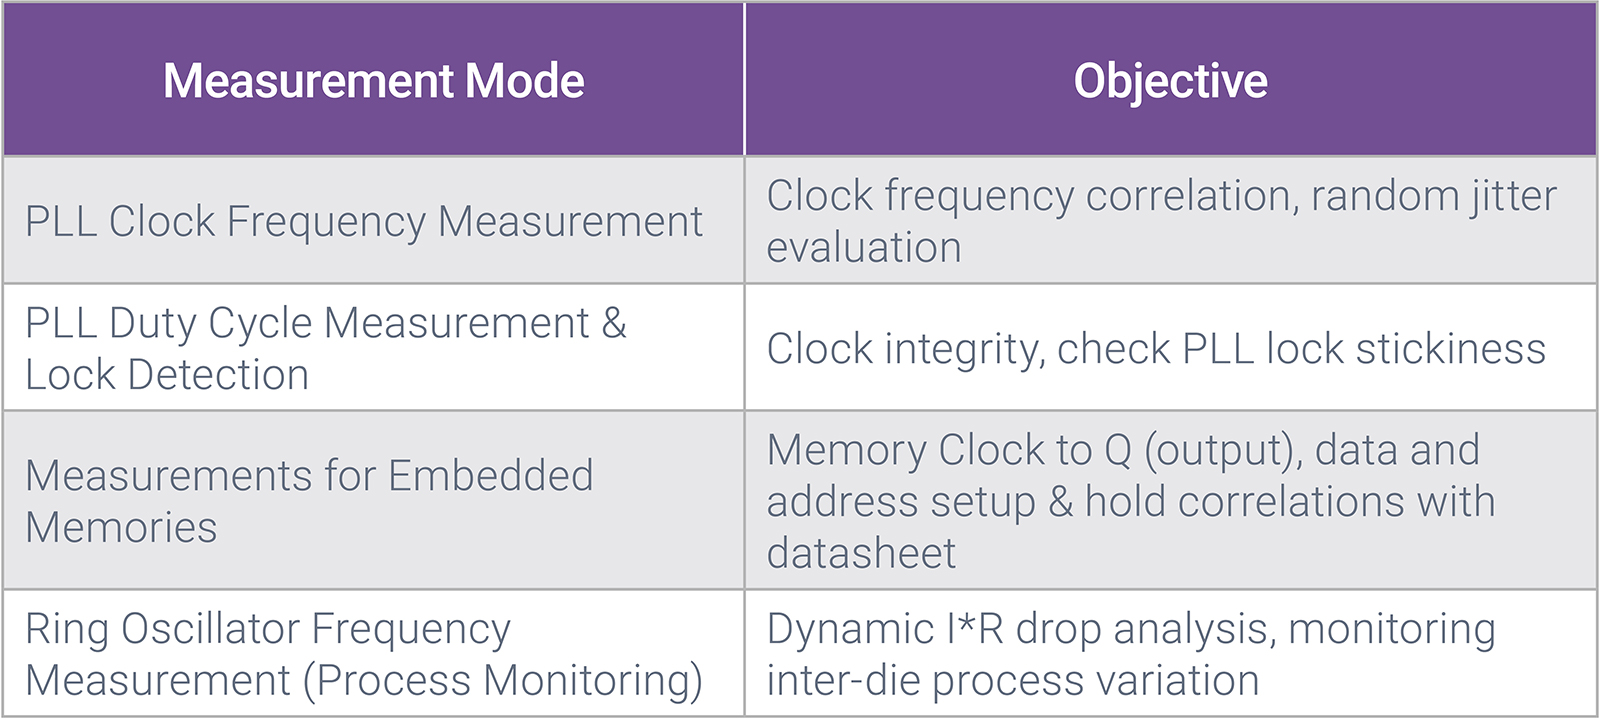 Figure 2: Measurement Unit Mode Specifications